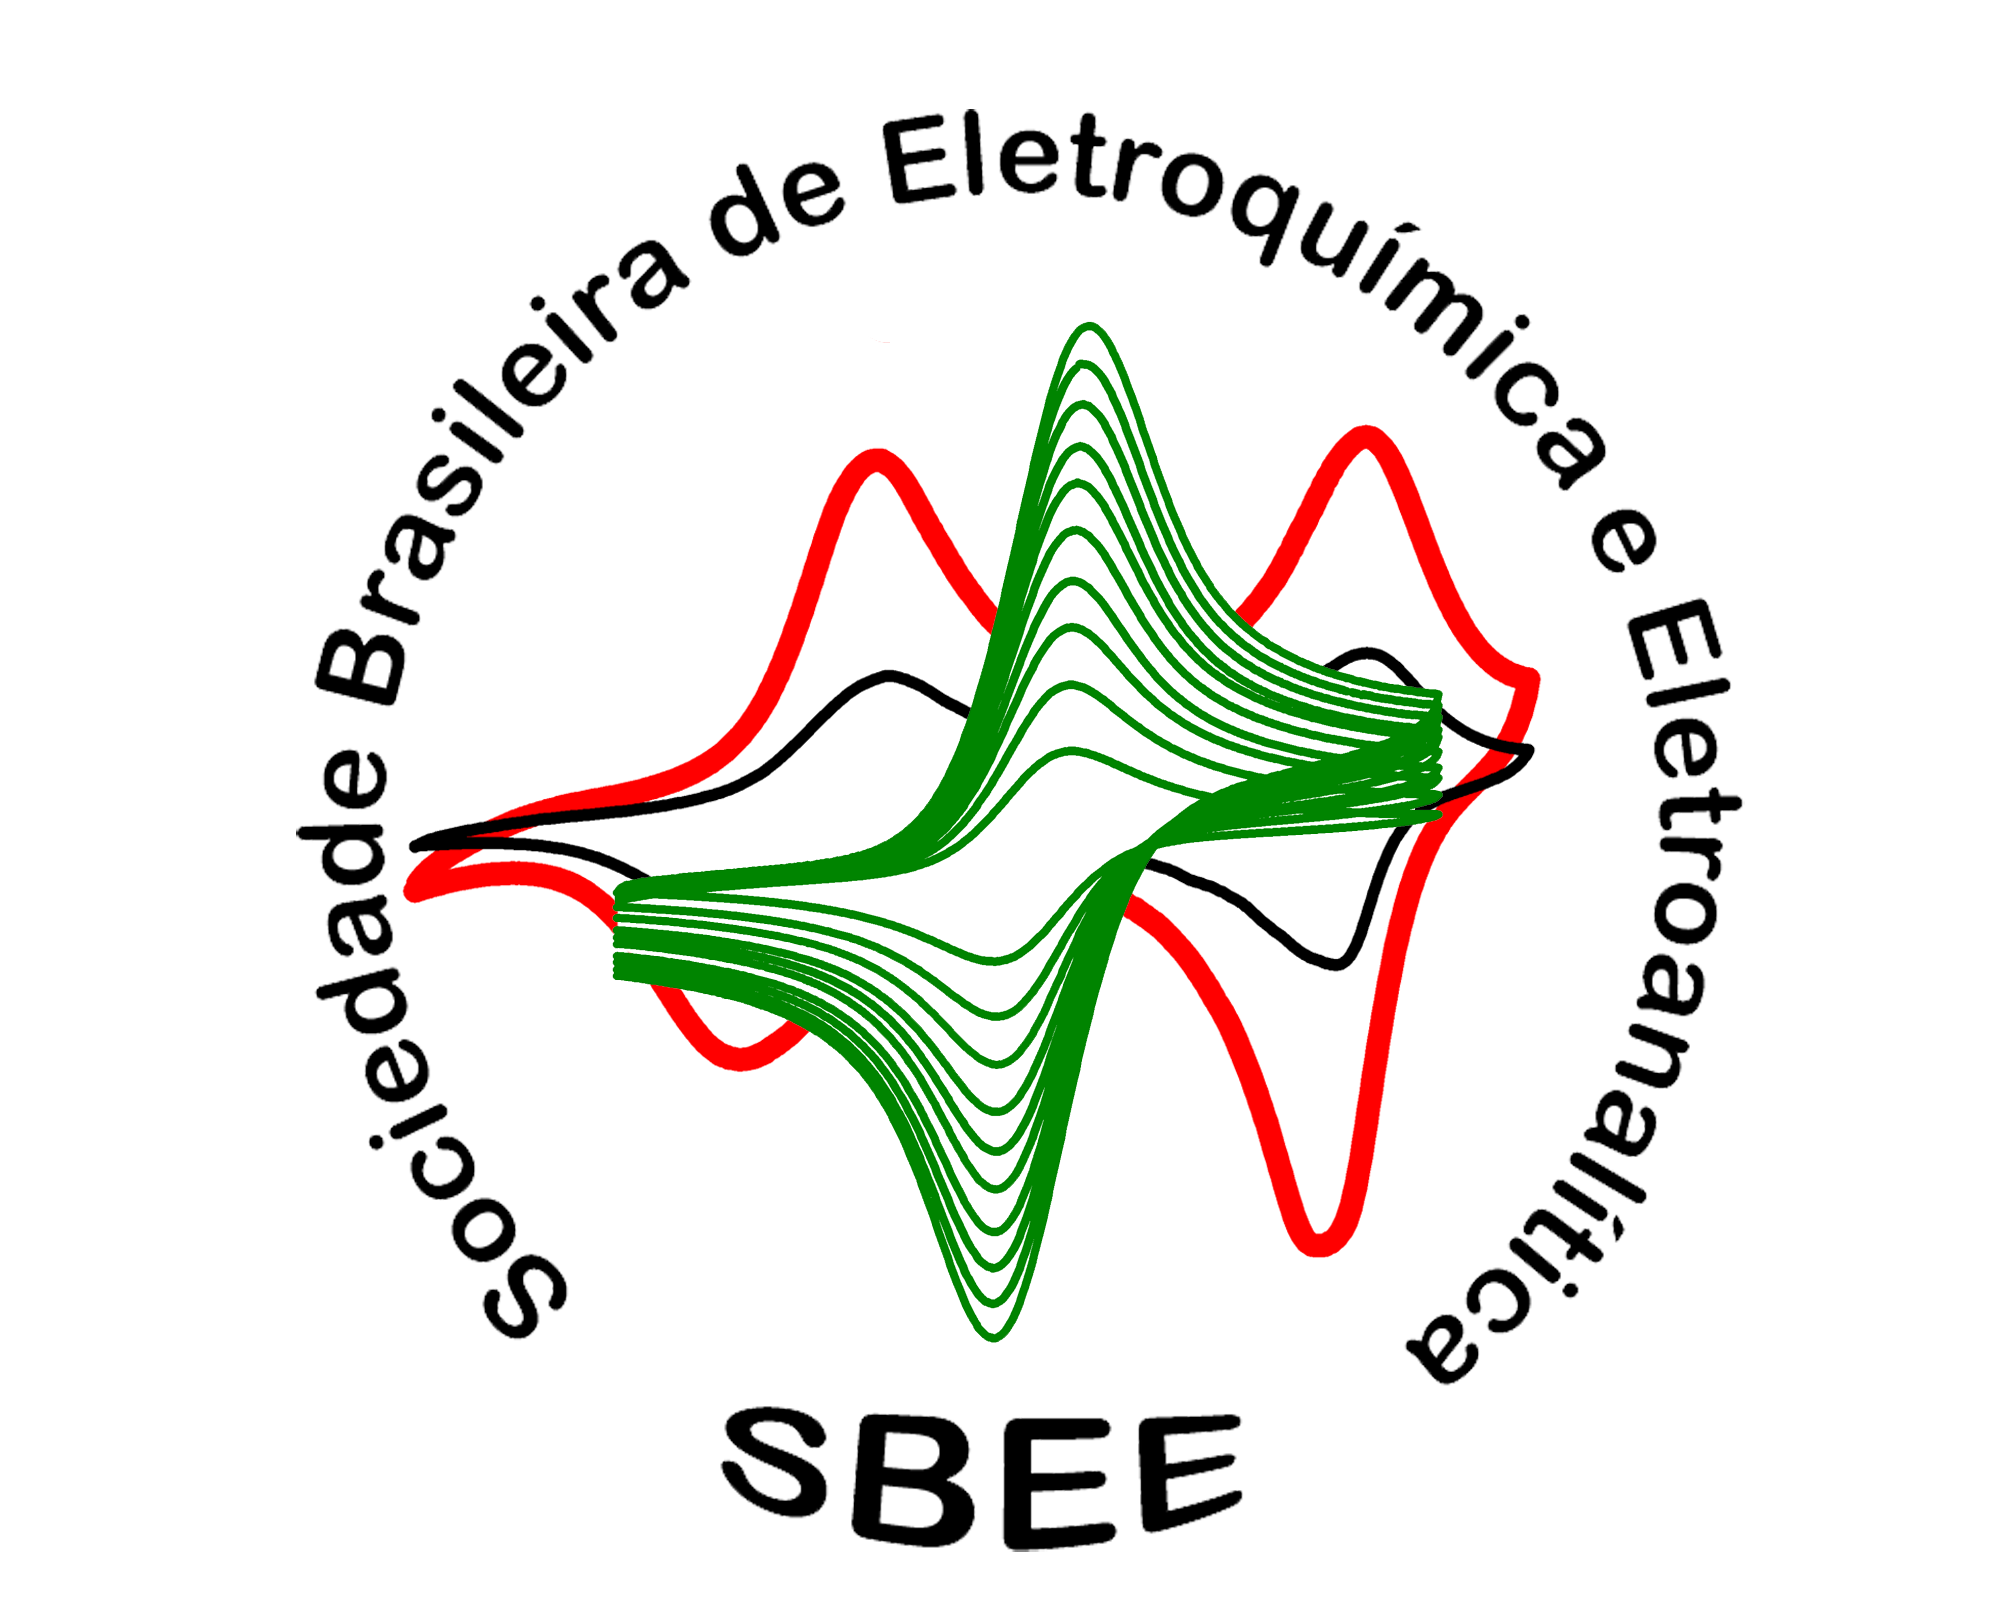 Brazil_Electrochemistry